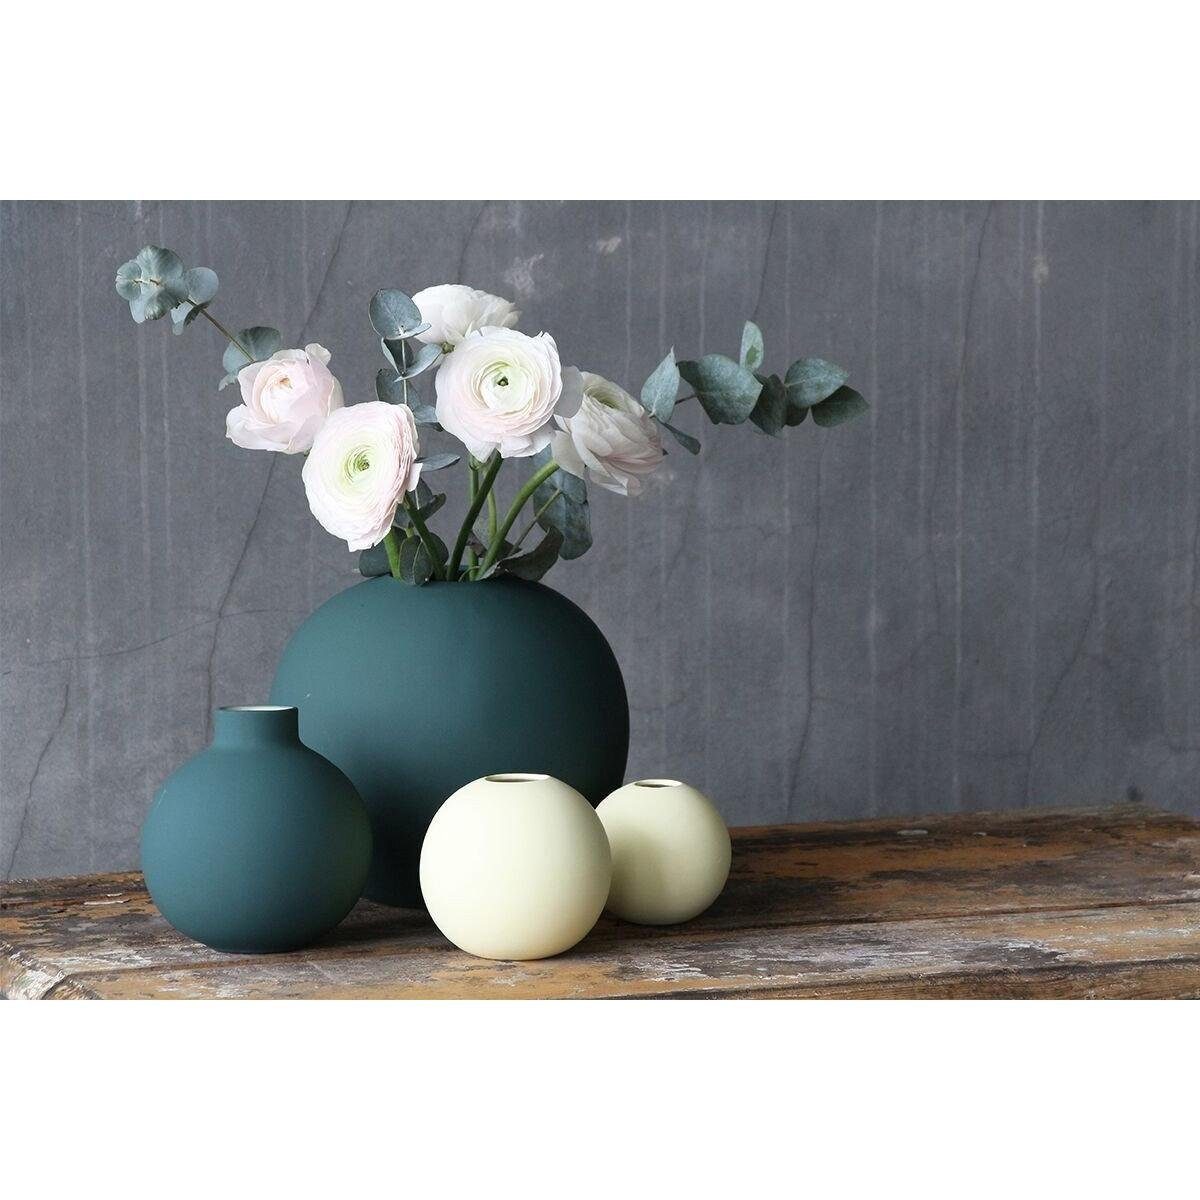 (10cm) Dekovase Design Dark Cooee Ball Green Vase